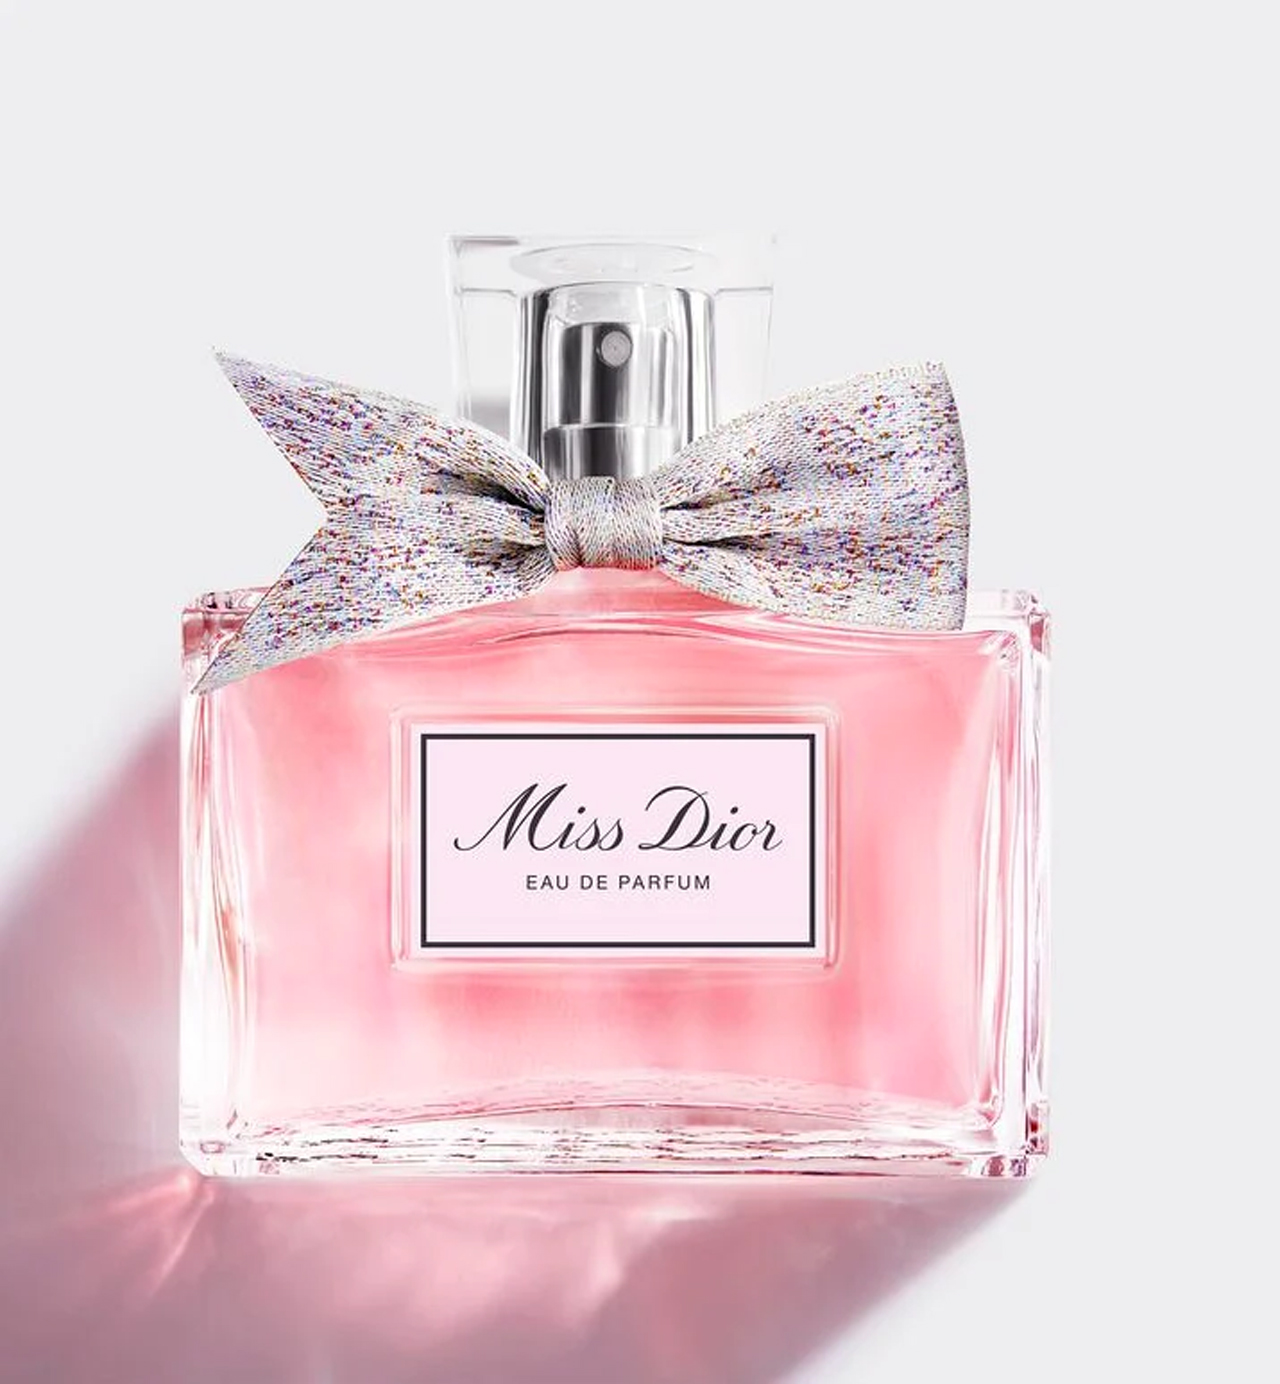 The Historical past of Miss Dior Eau de Parfume